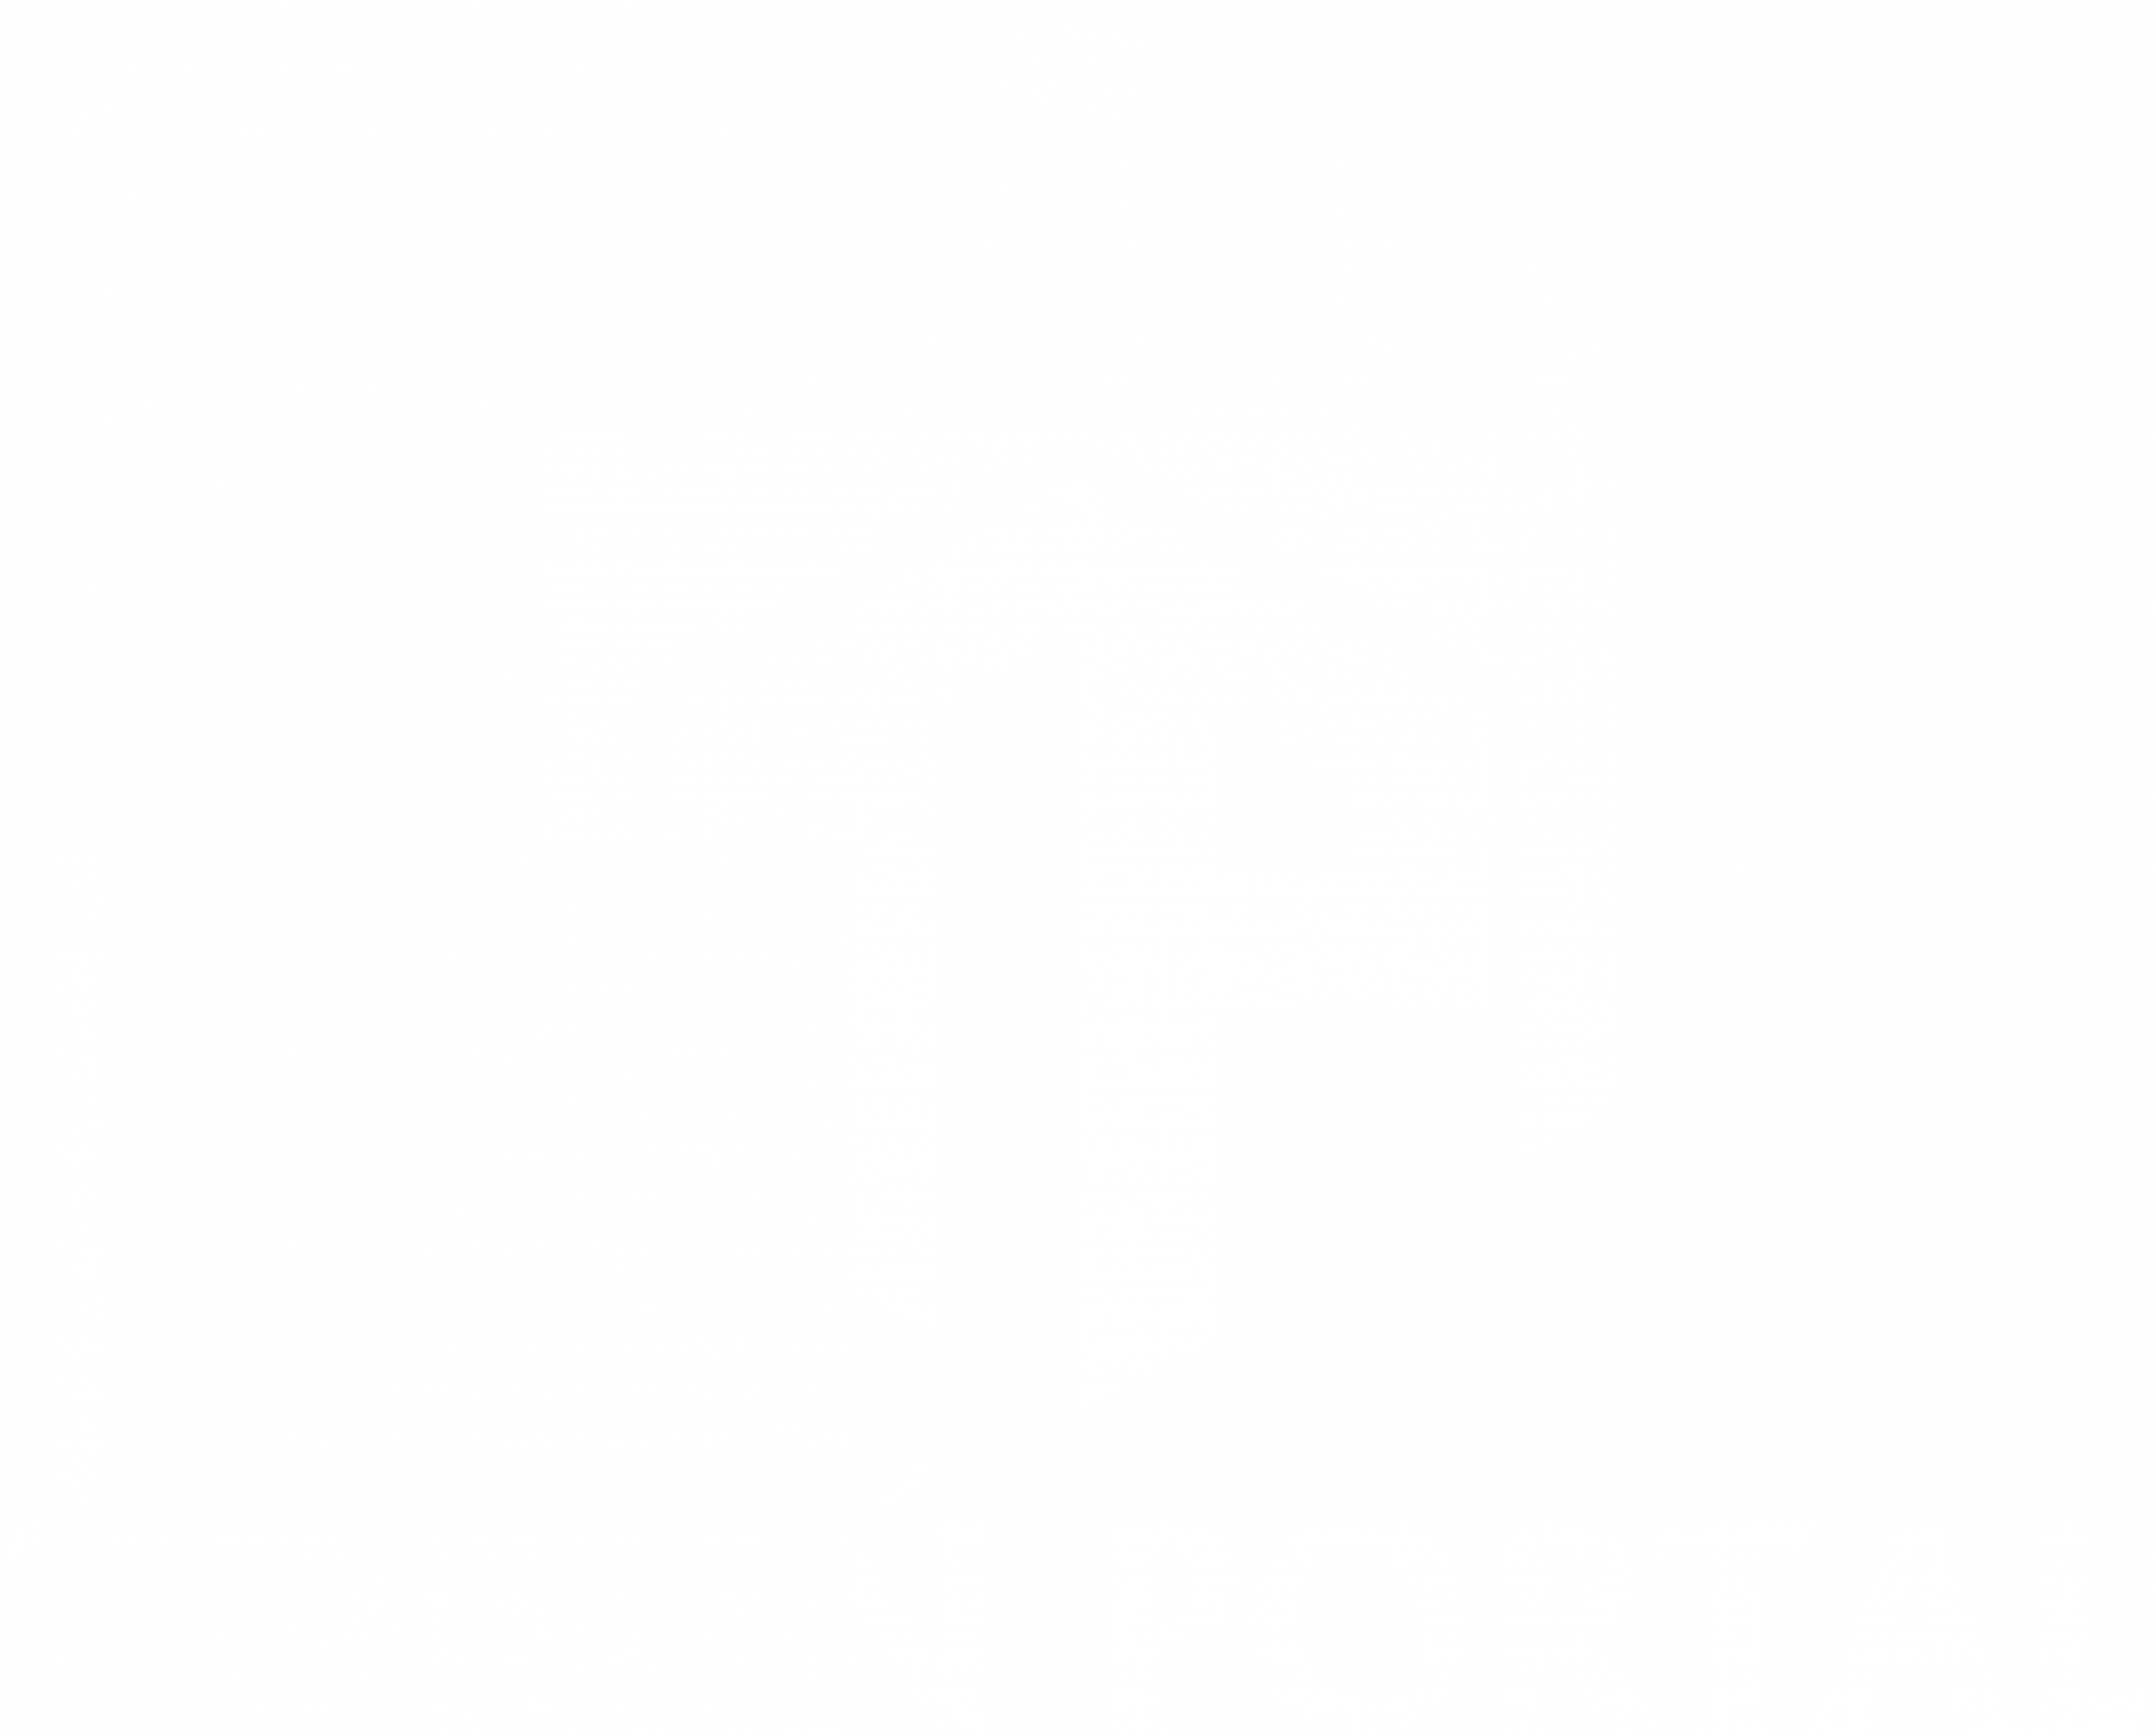 www.torunportal.pl | Toruń Portal - Informacje z Torunia i okolic